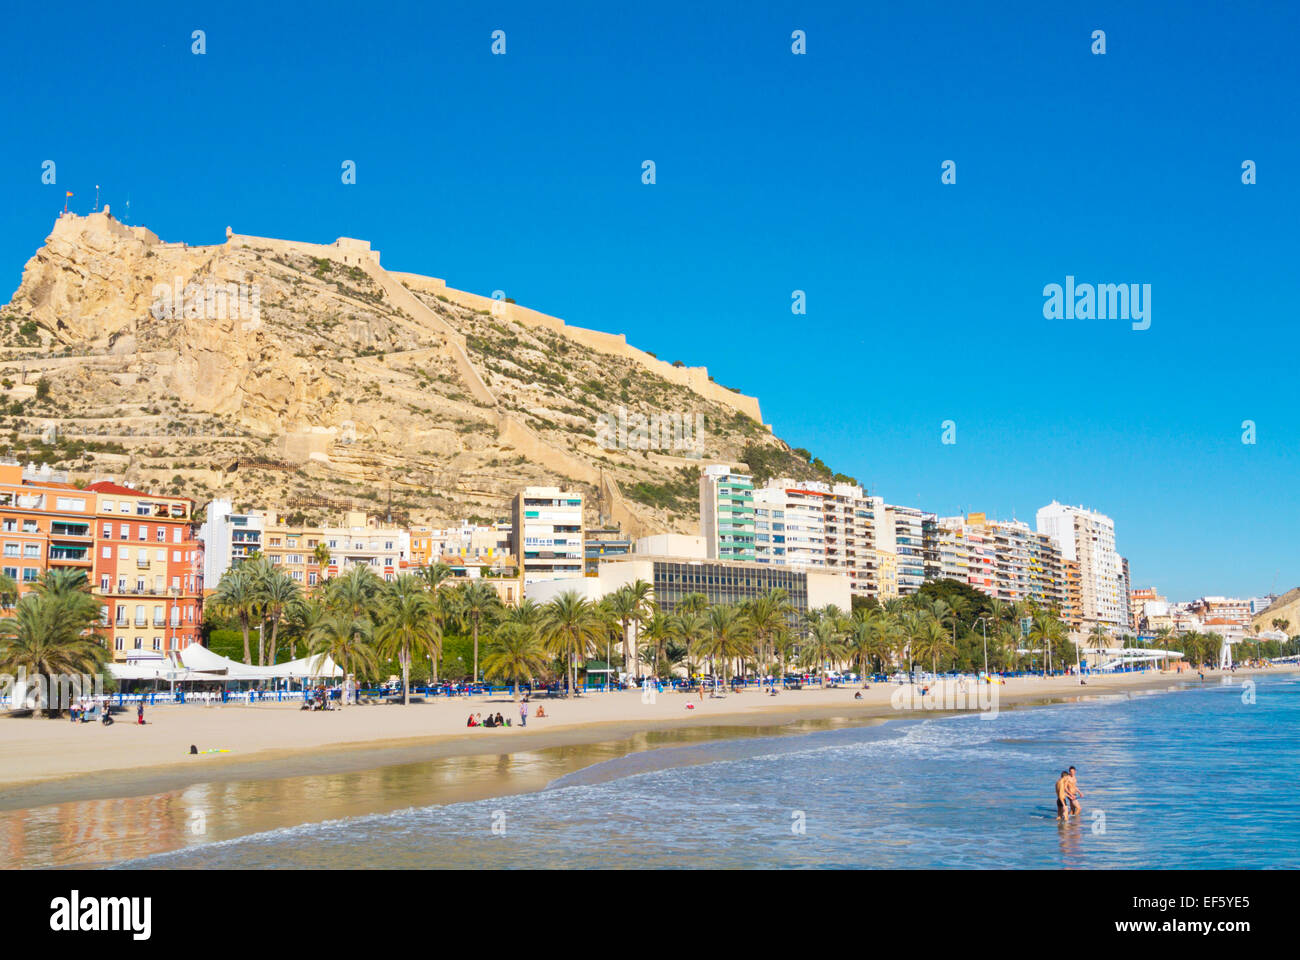 Playa del Postiguet, Alicante, Alacant, Costa Blanca, Spain Stock Photo